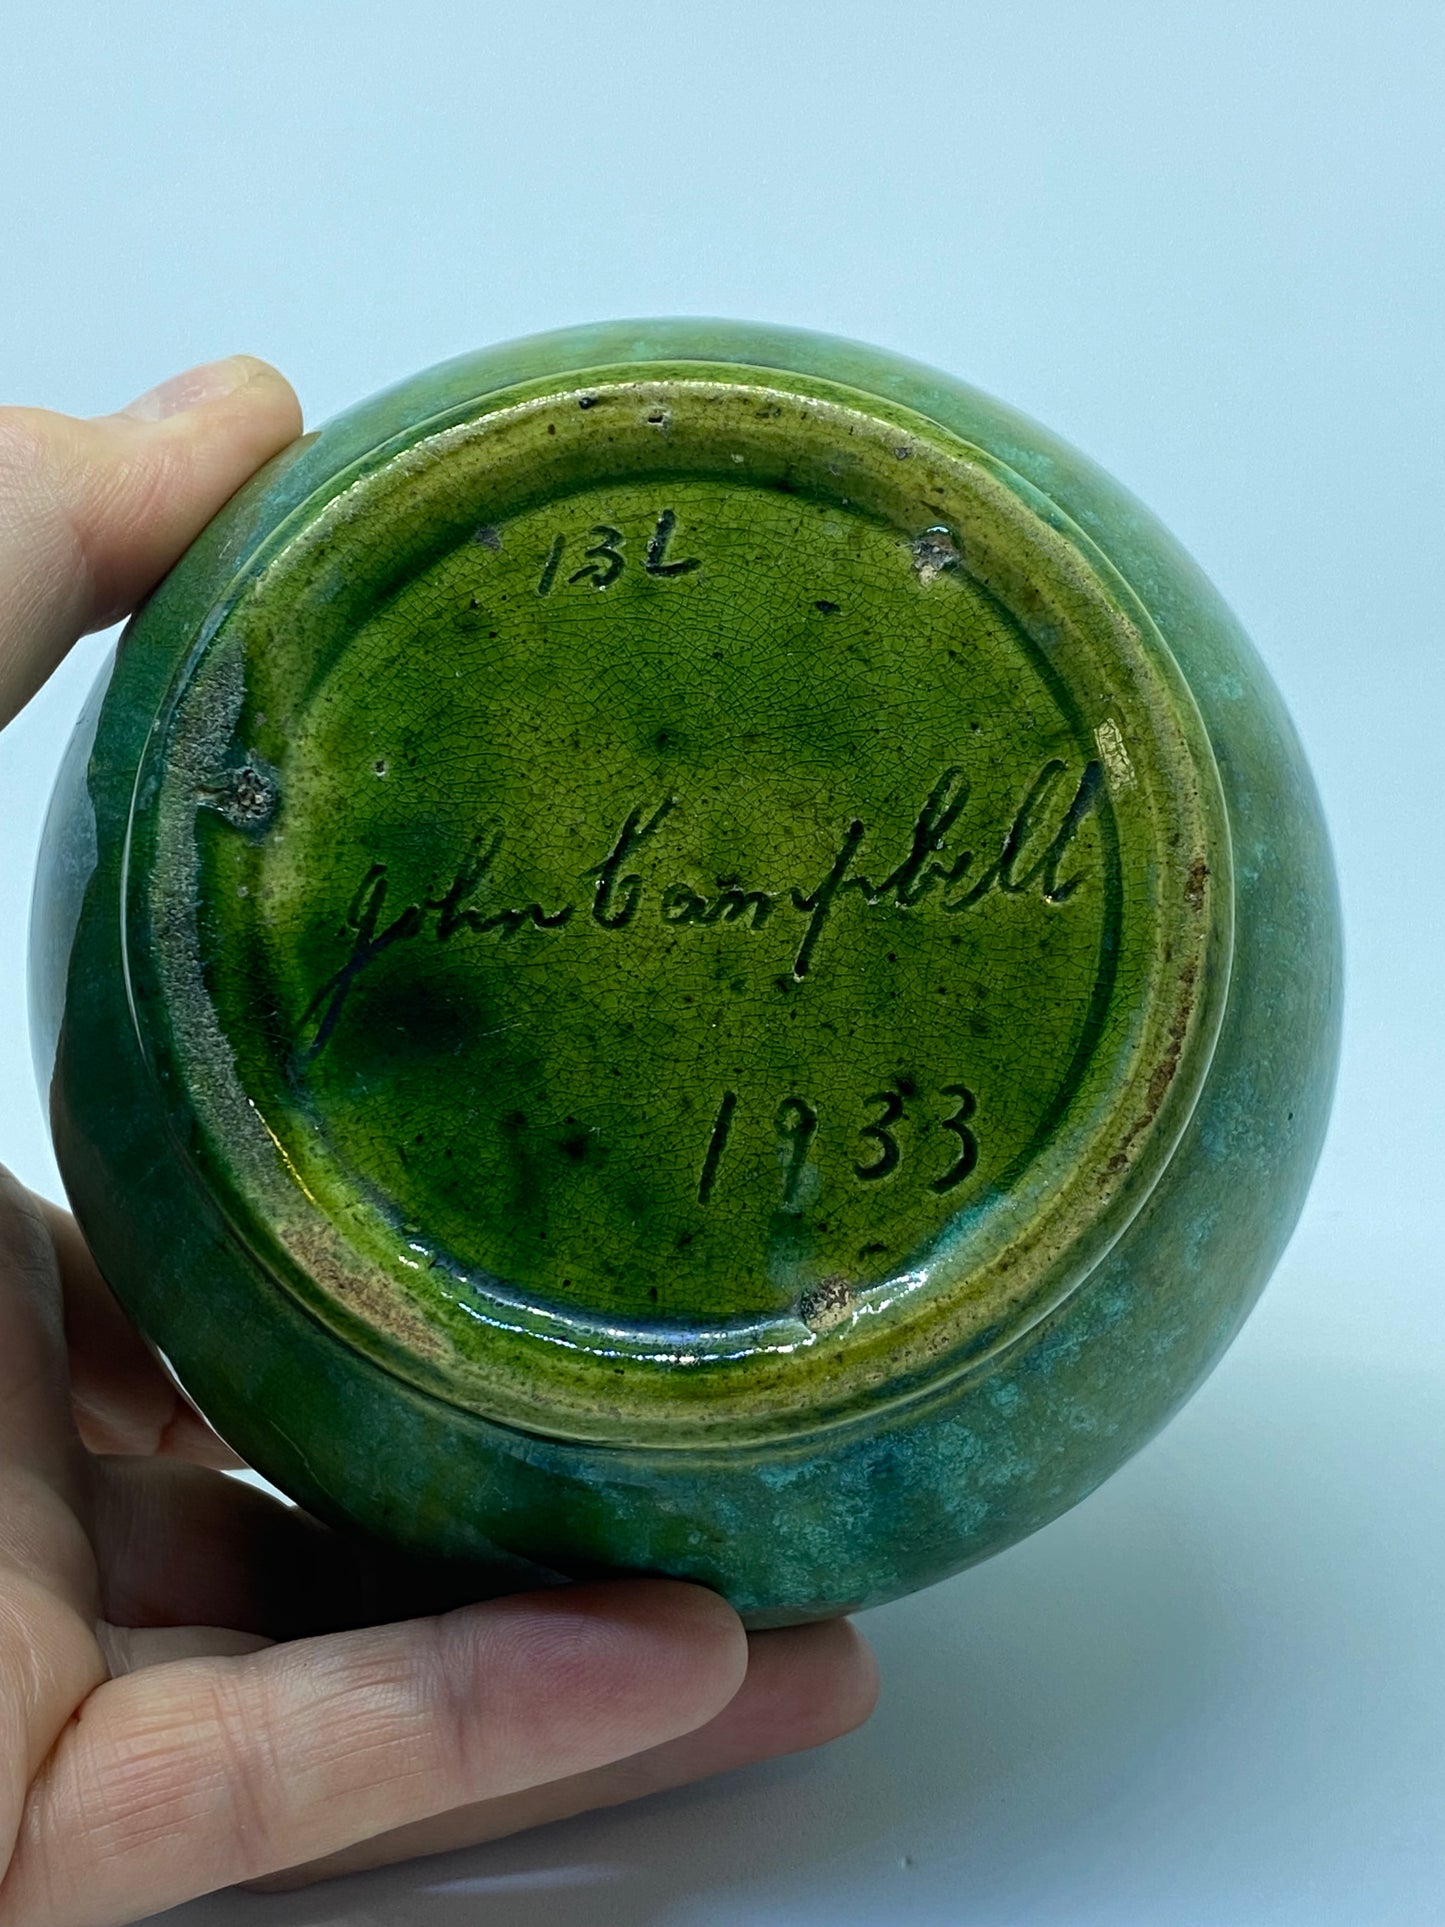 John Campbell 1933 13L vase green glazed